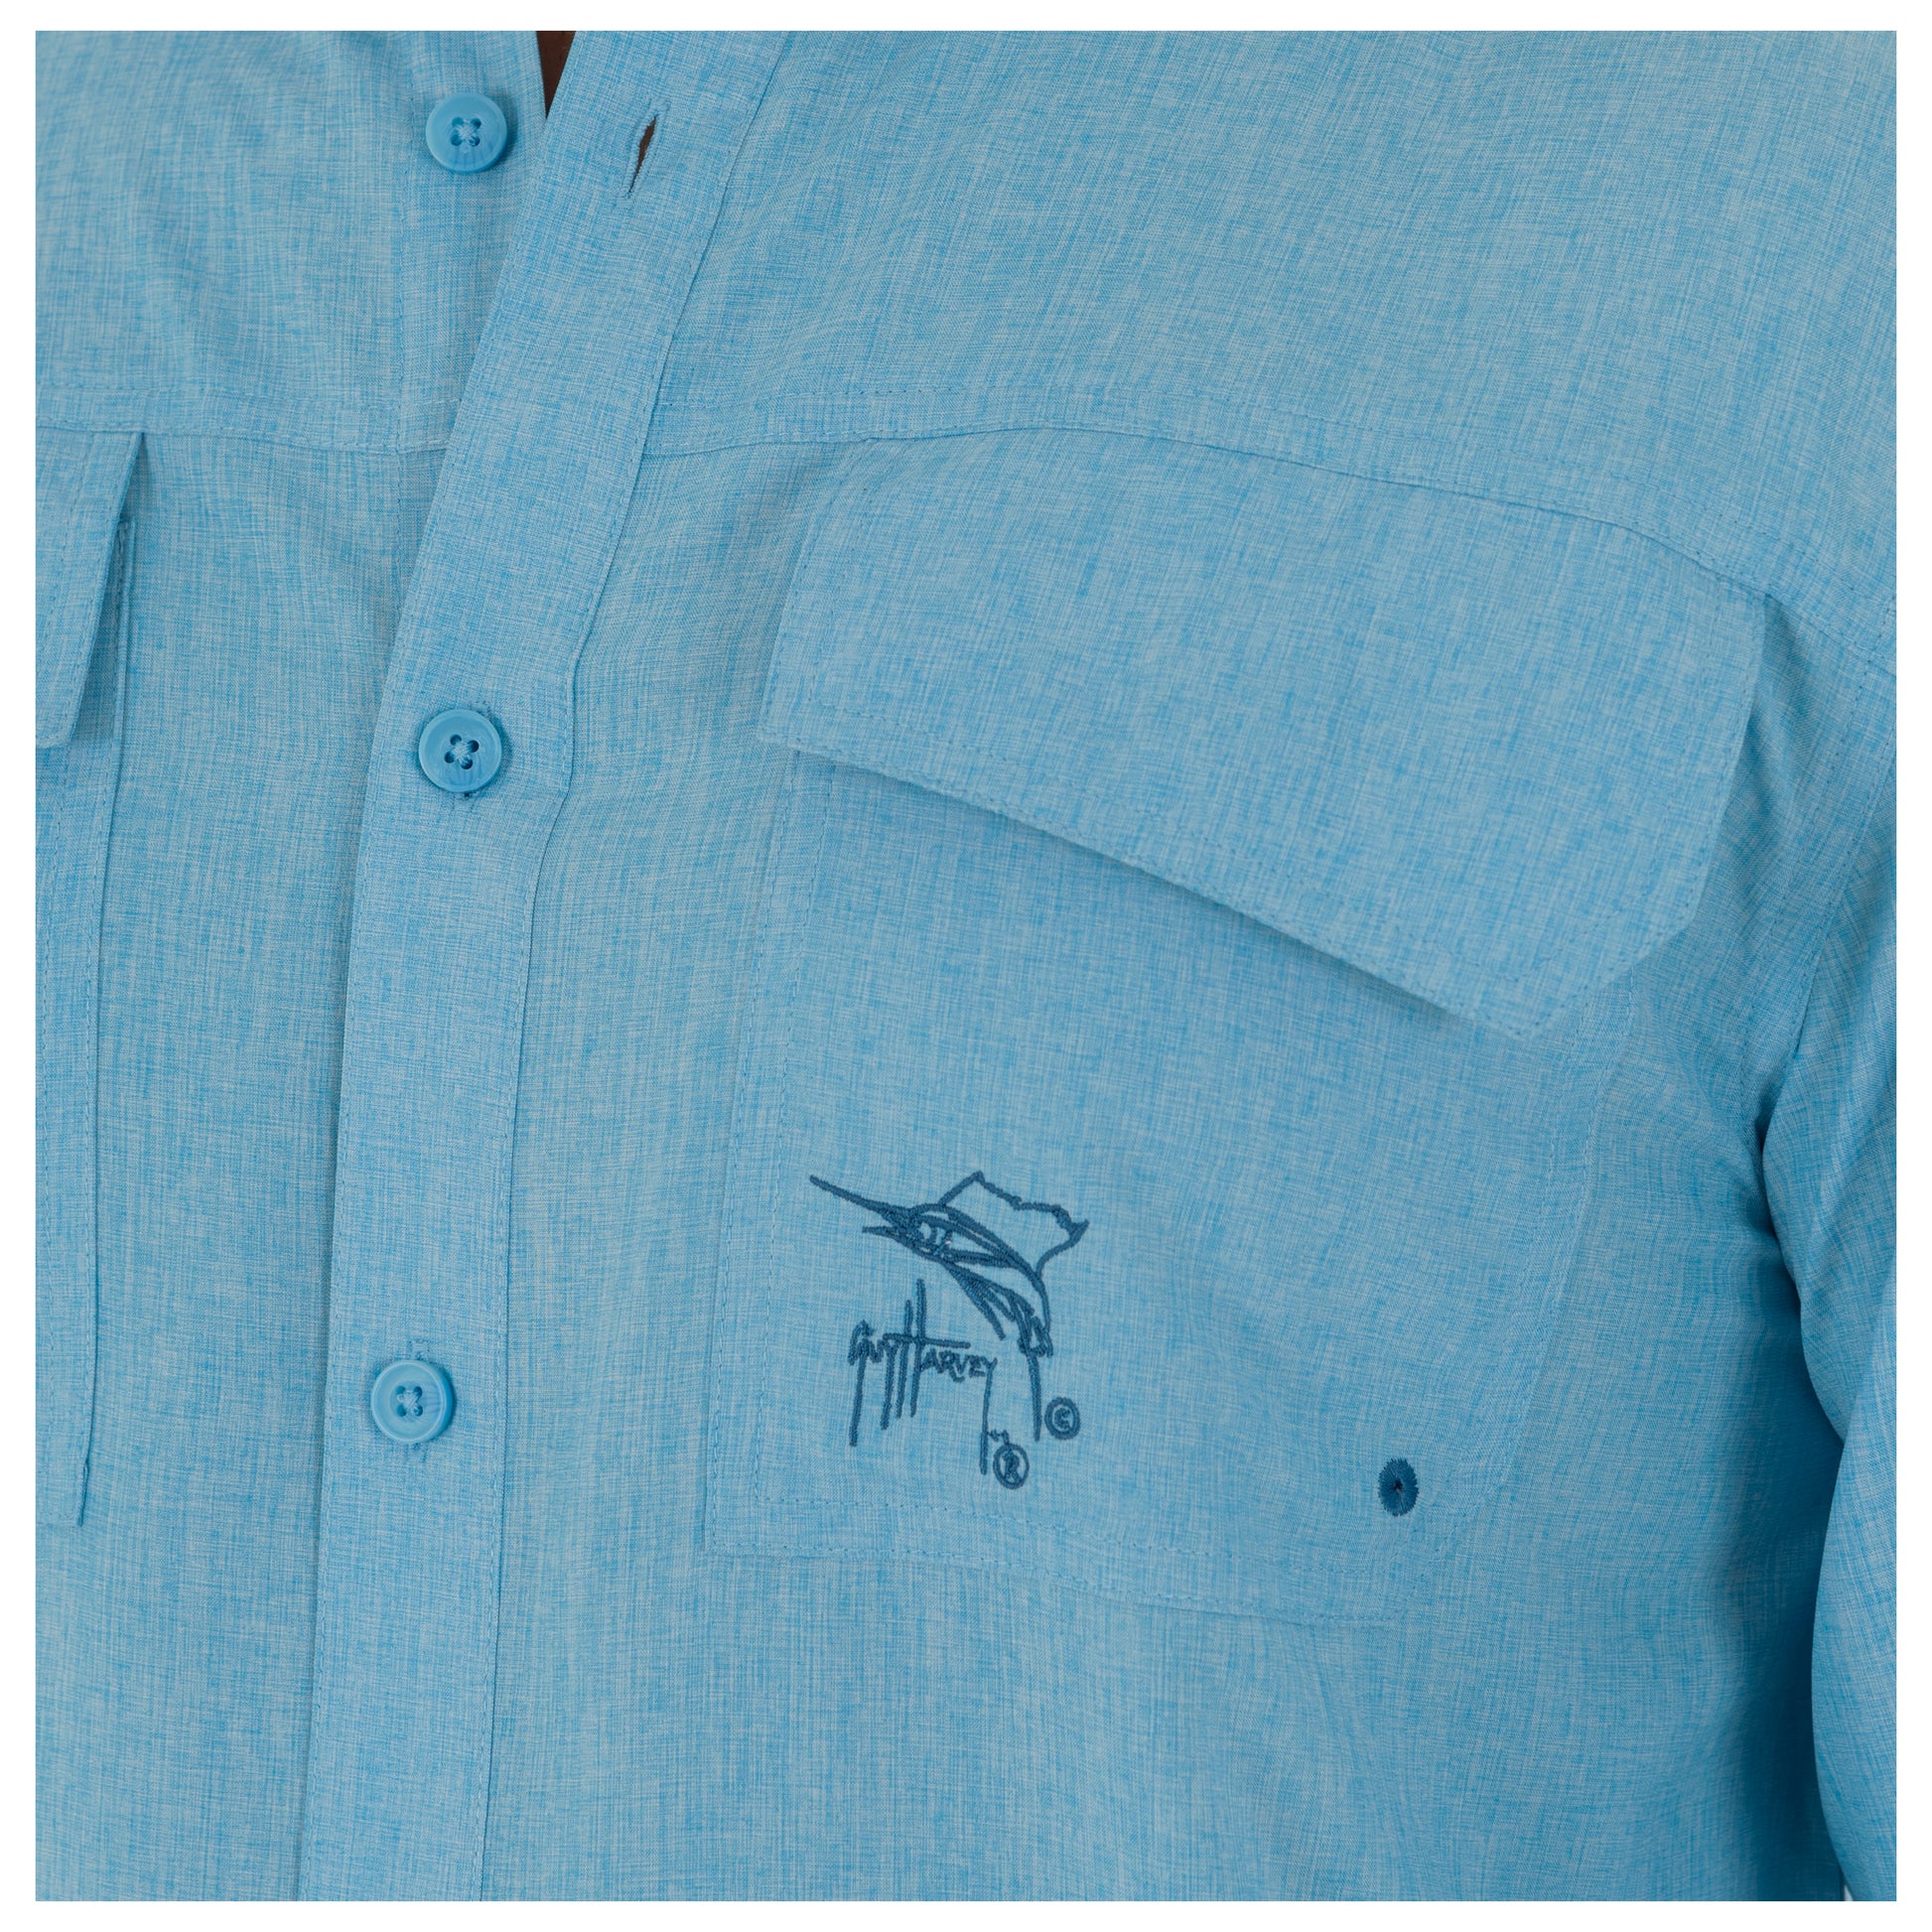 Guy Harvey Long Sleeve Fishing Shirt Large Aqua Blue Cancun Button Down